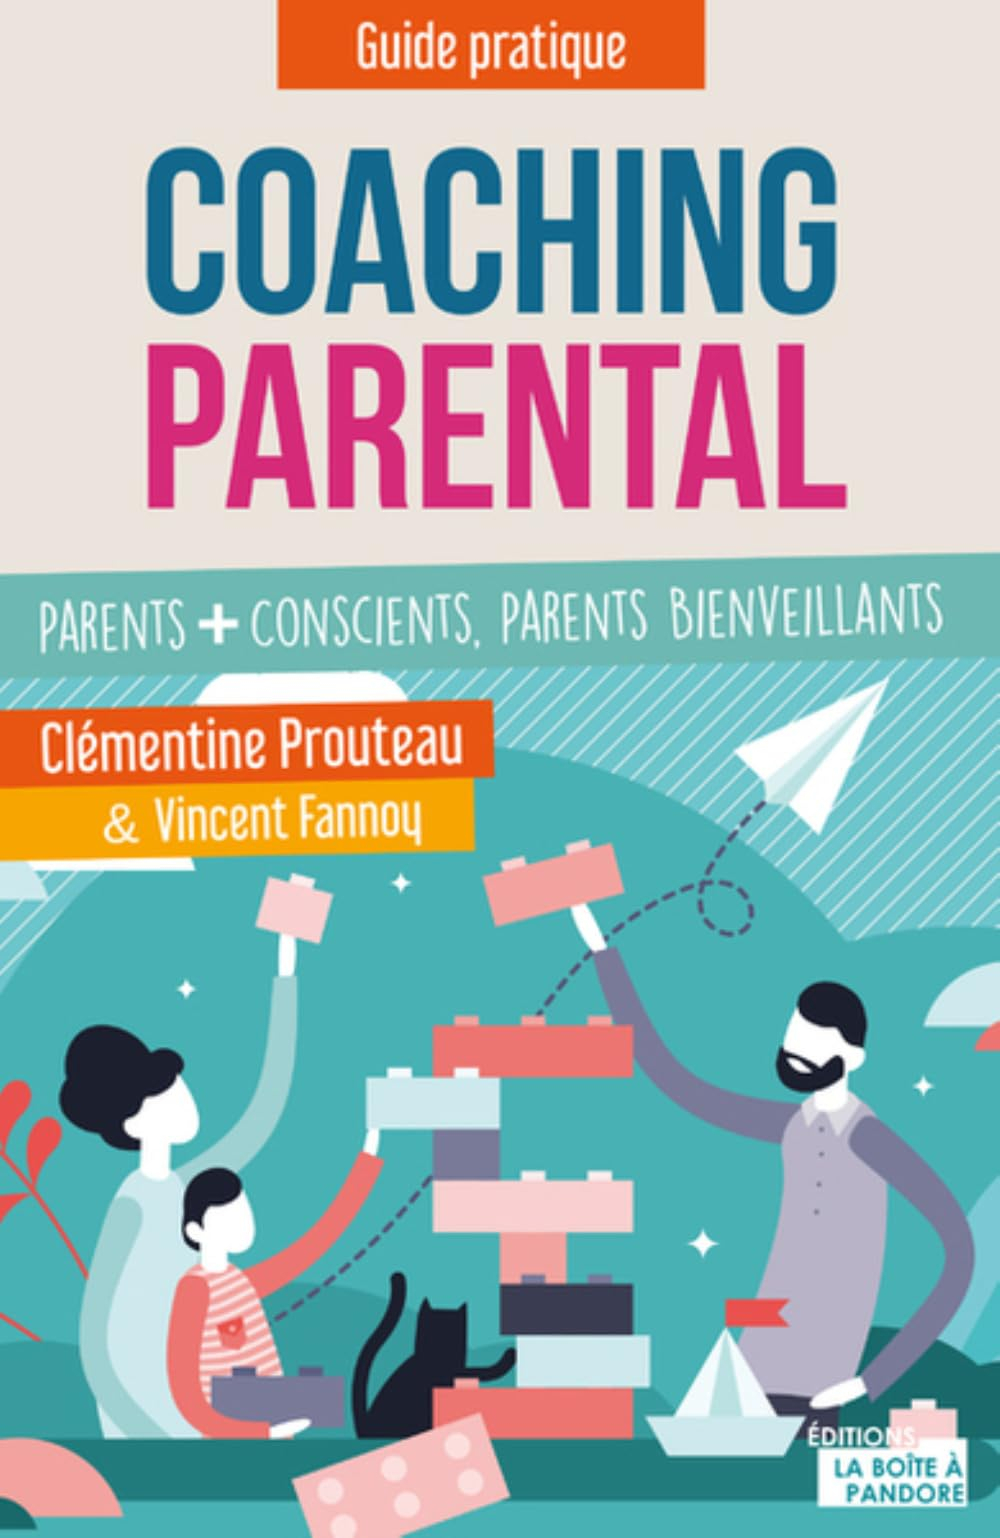 Coaching parental : parents + conscients, parents bienveillants